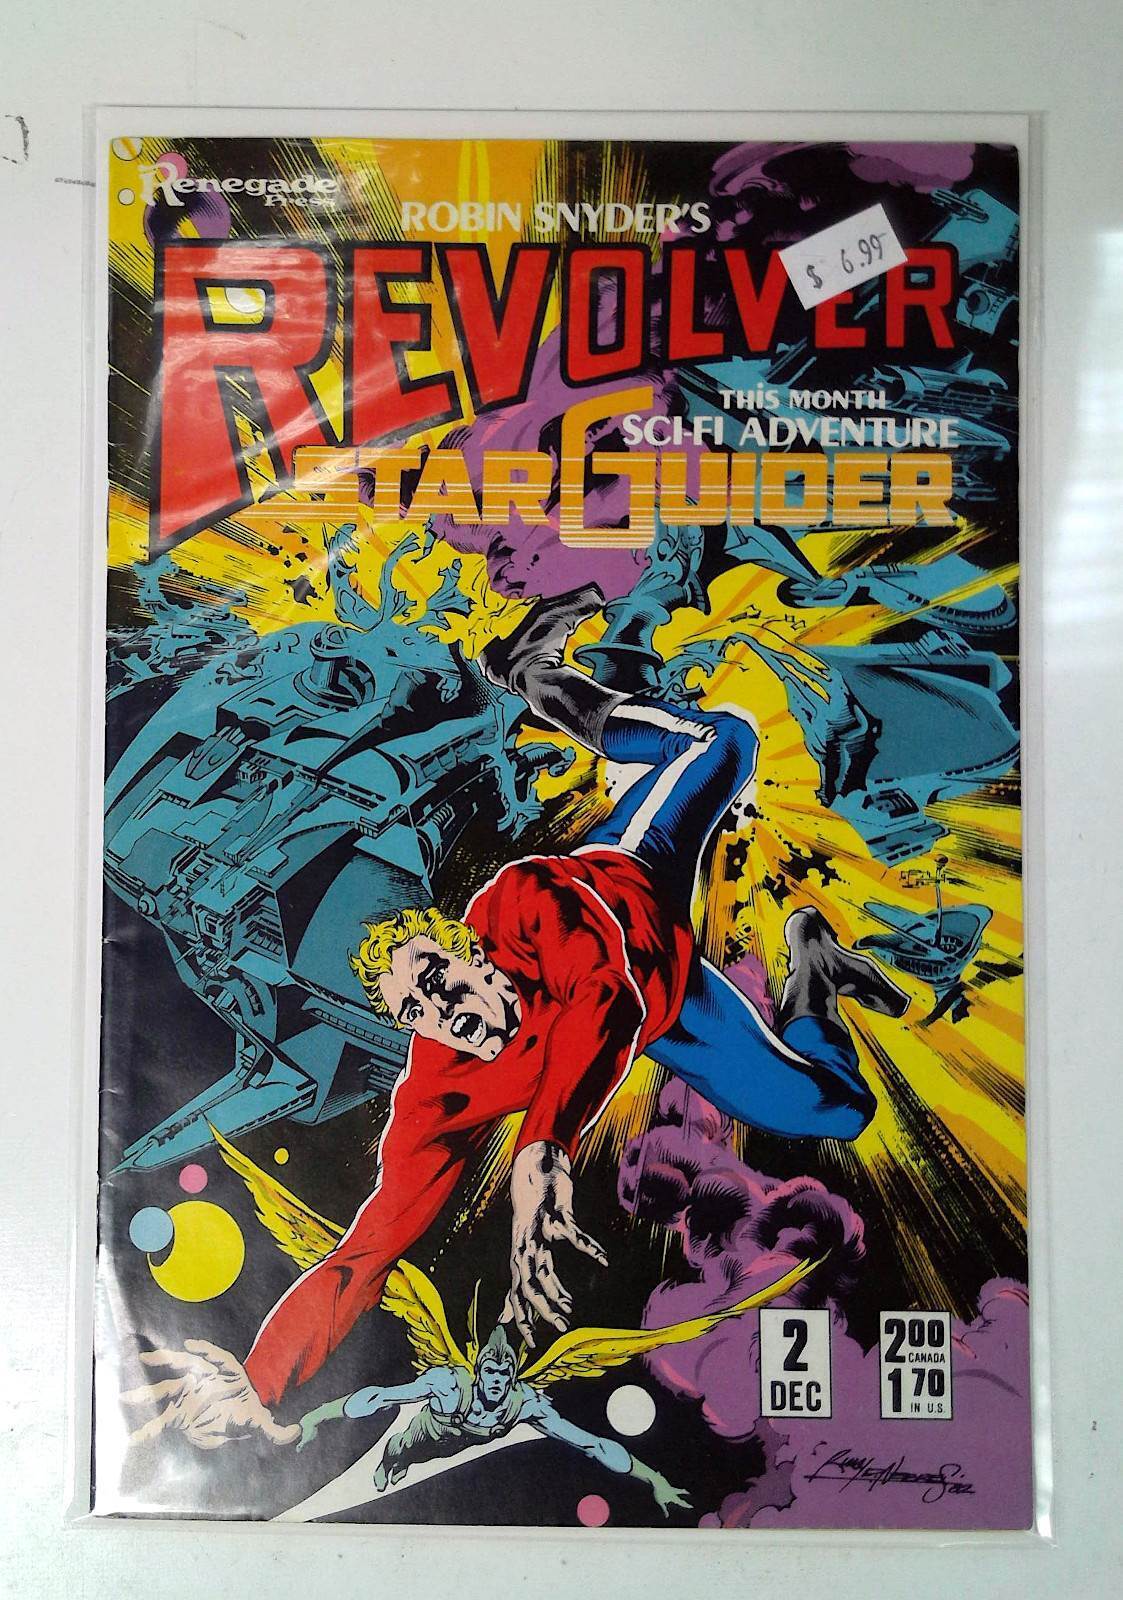 1985 Robin Snyder's Revolver #2 Renegade Press VF 1st Print Comic Book